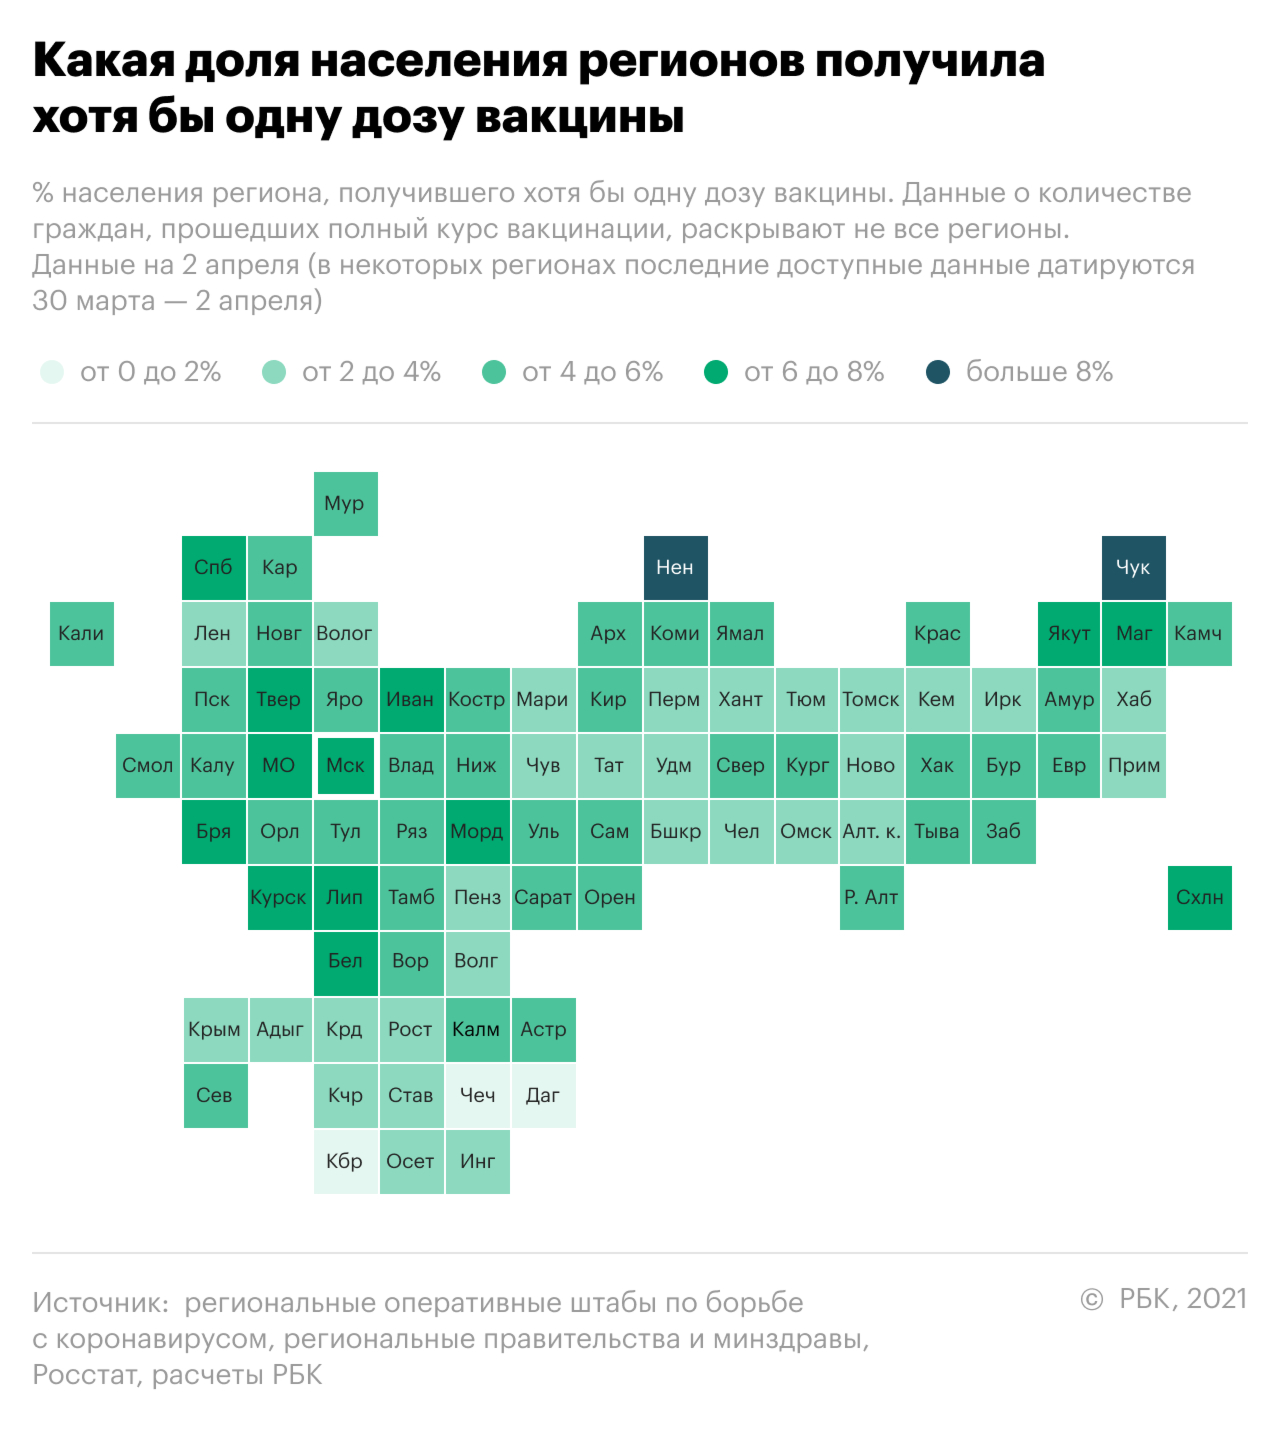 Вакцинацию от COVID-19 полностью прошли чуть больше 3% россиян